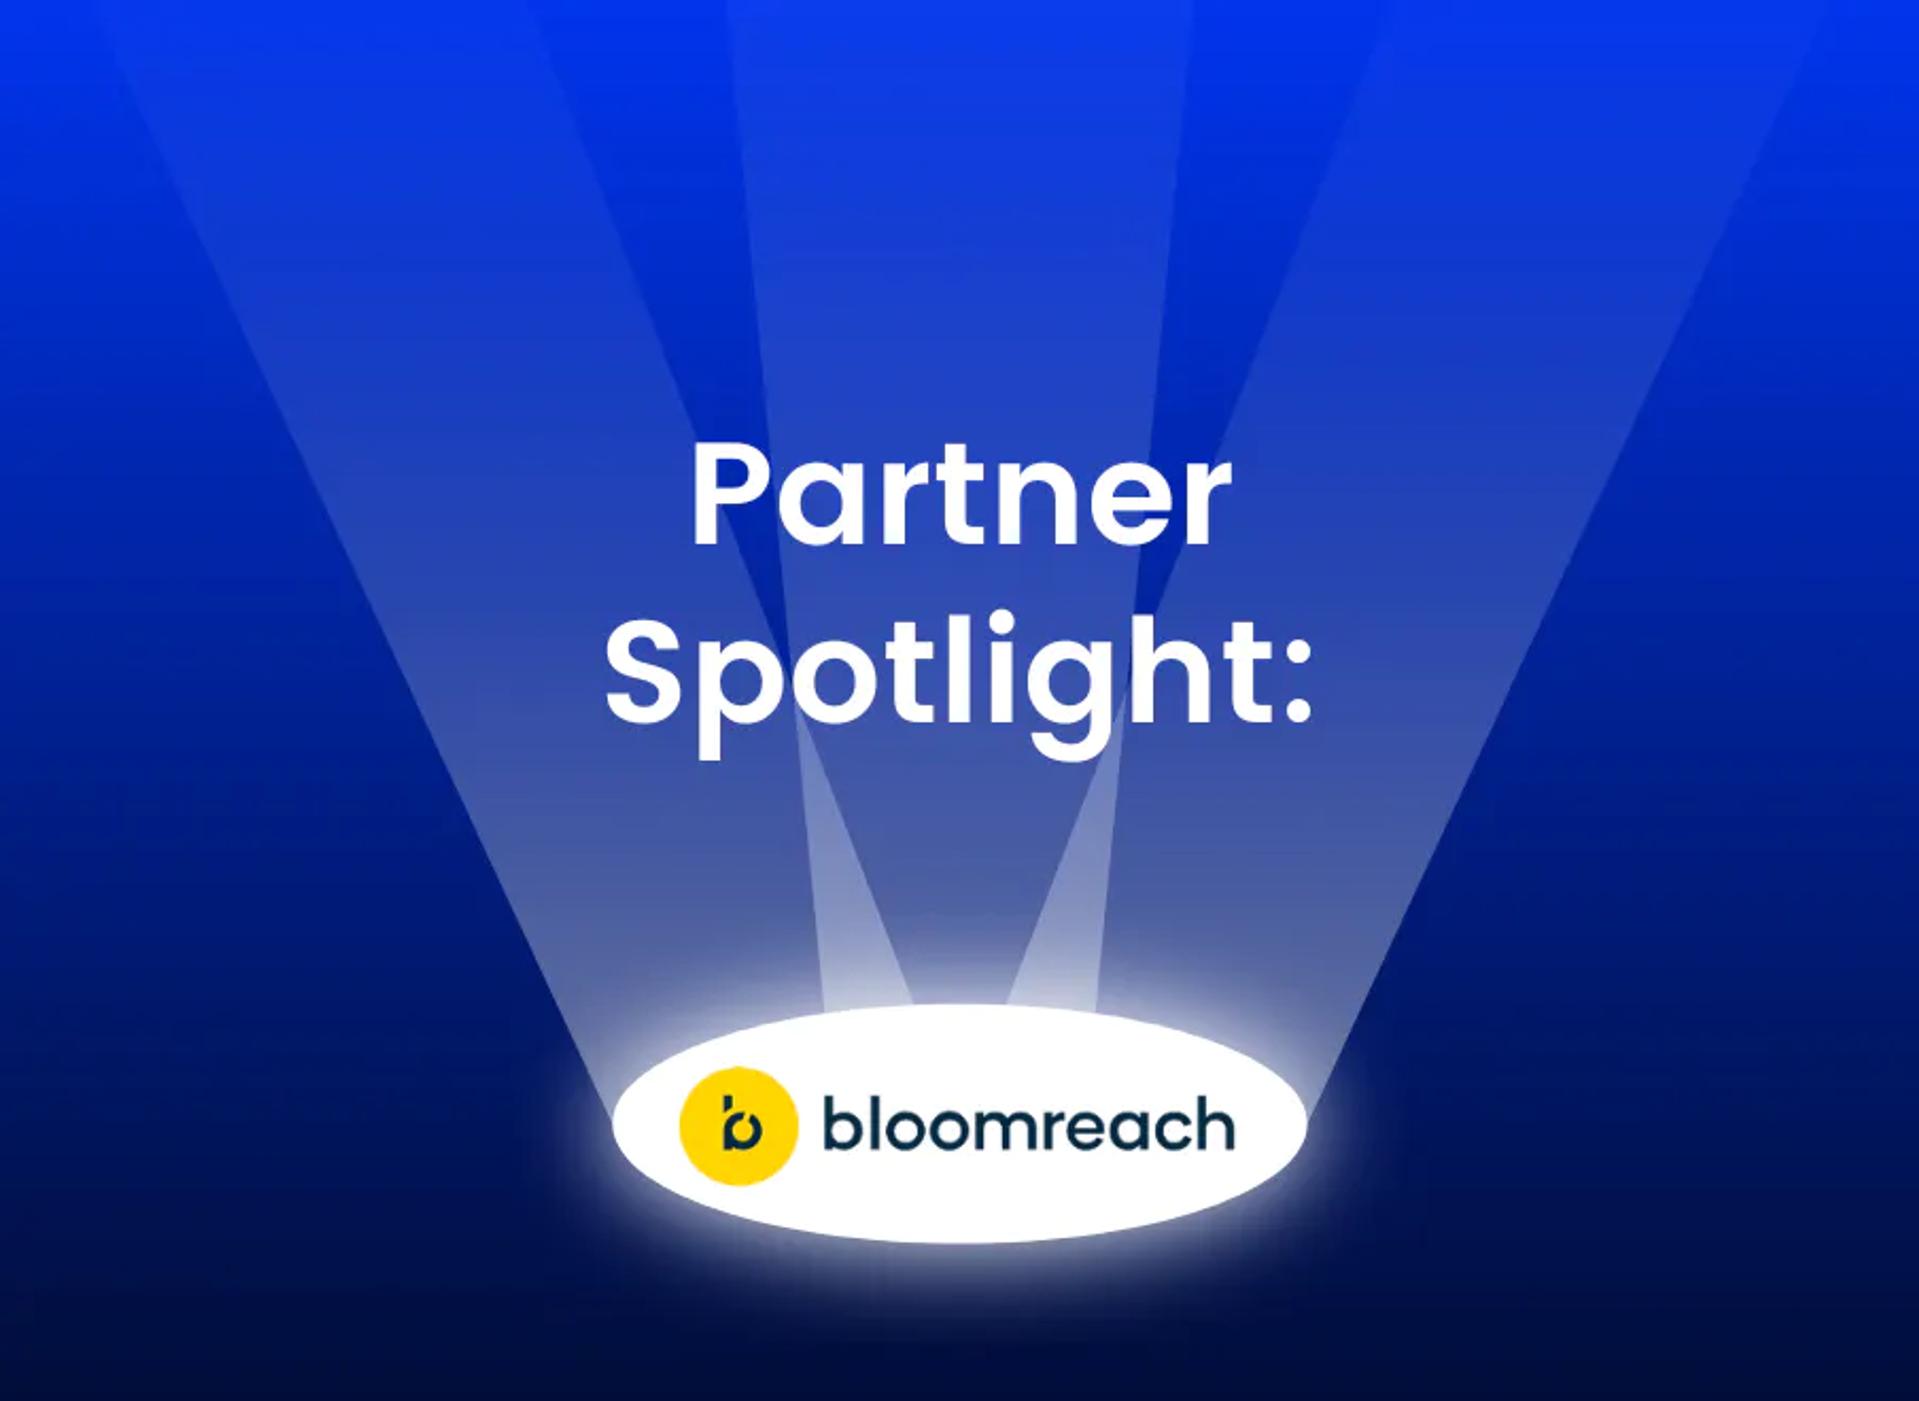 A spotlight on the Bloomreach logo